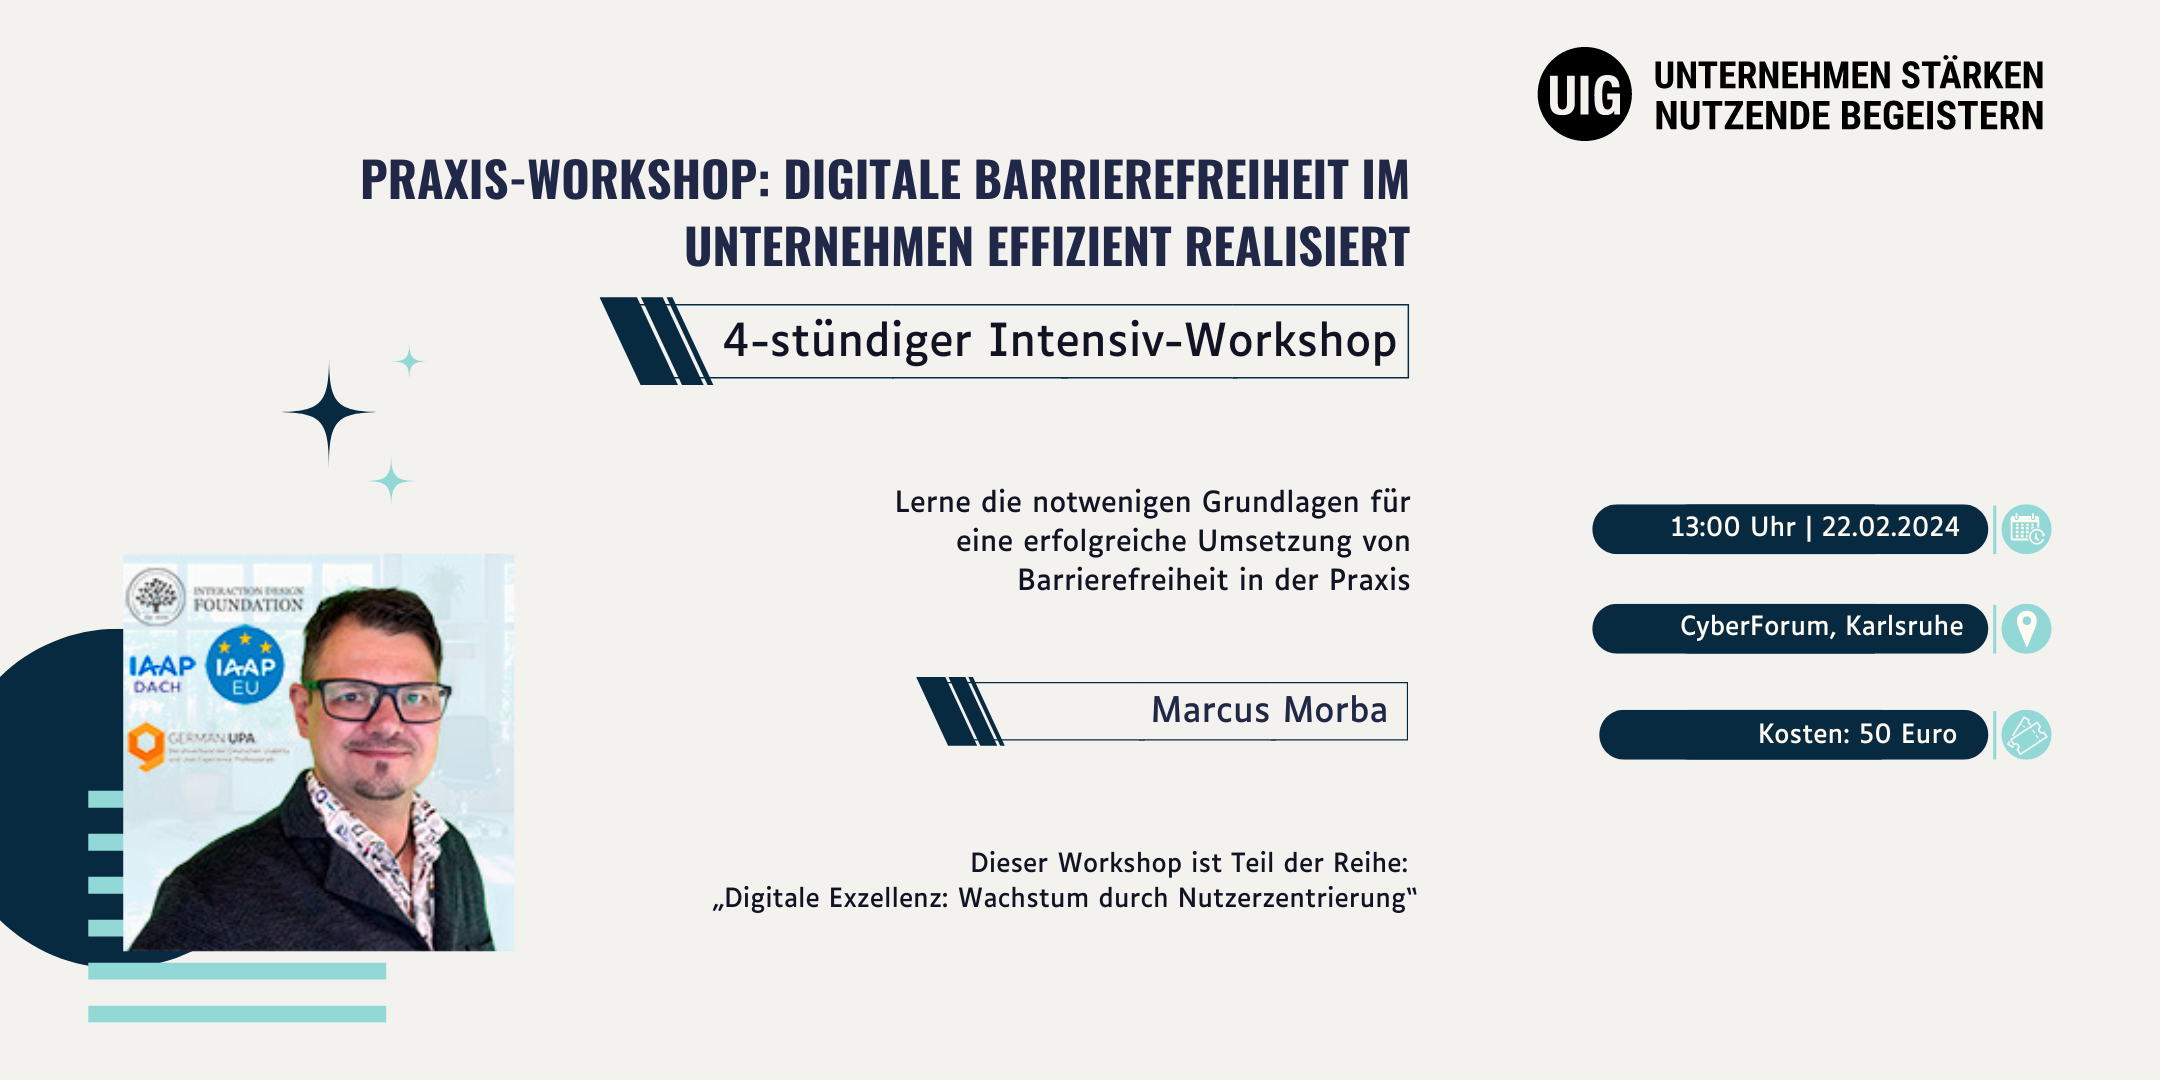 Praxis-Workshop: Digitale Barrierefreiheit im Unternehmen effizient realisiert